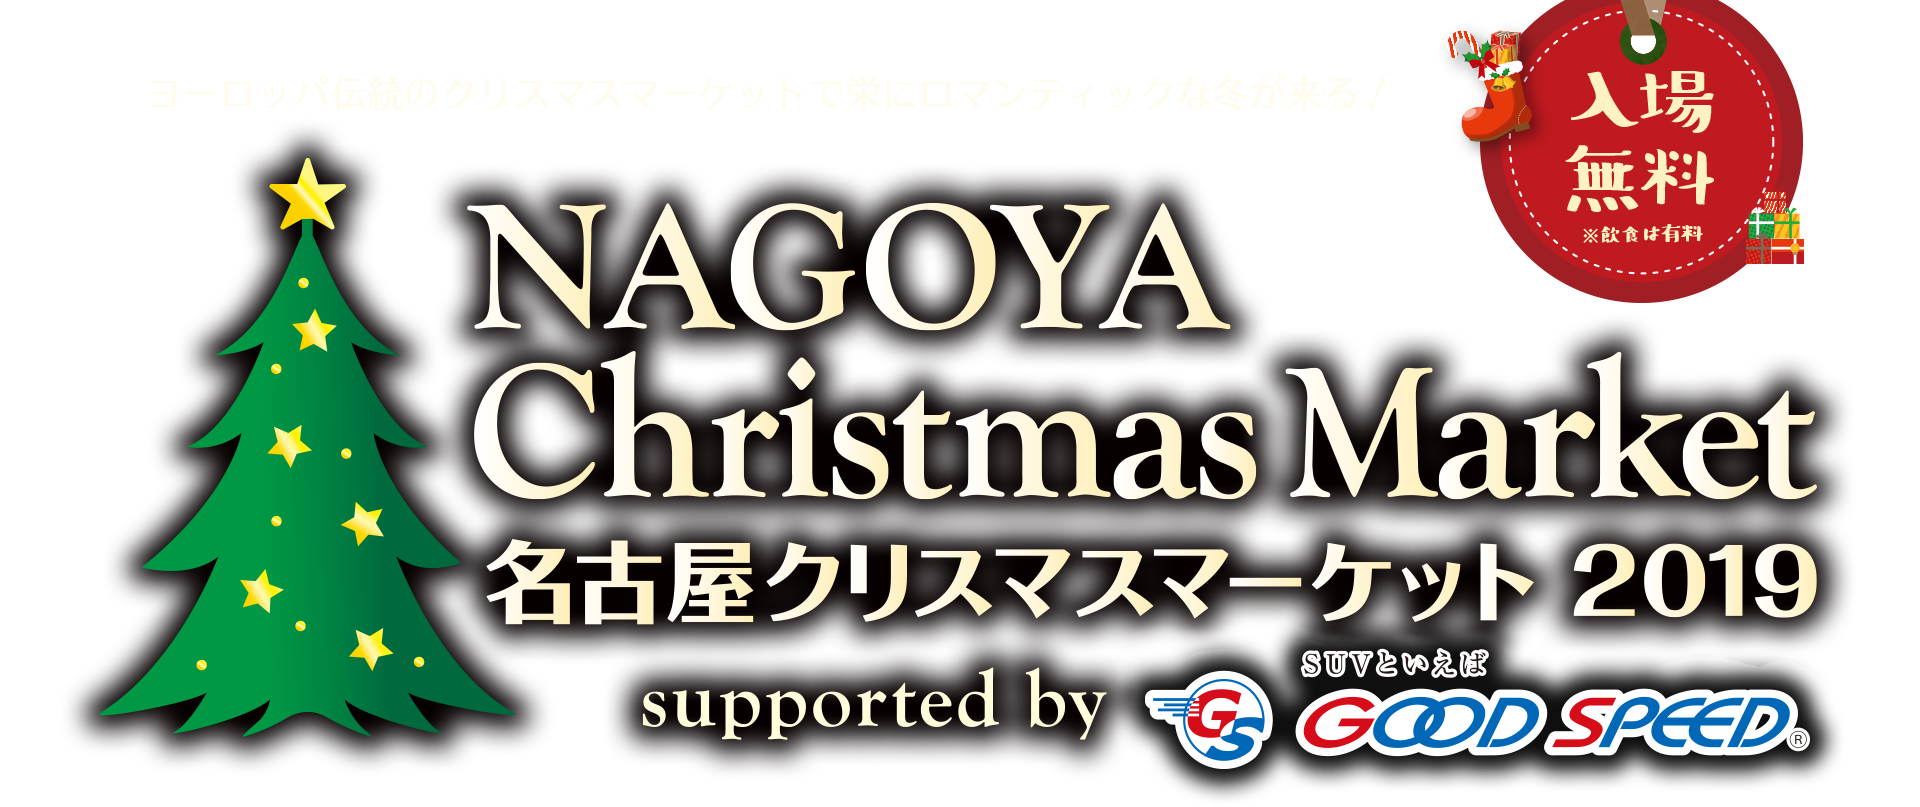 名古屋クリスマスマーケット2019【入場無料】ヨーロッパ伝統のクリスマスマーケットで栄にロマンティックな冬が来る！supported by GOODSPEED